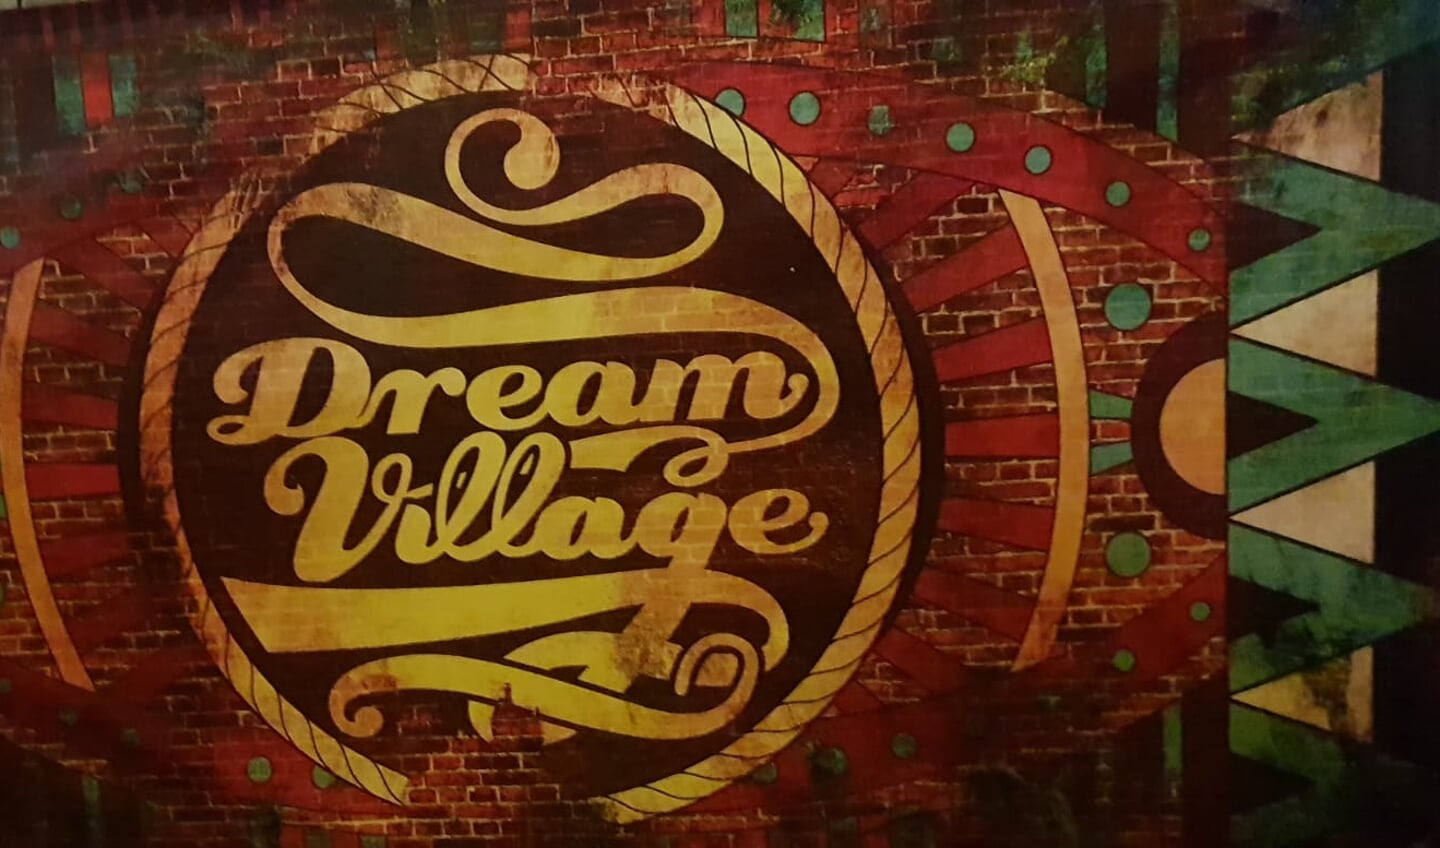 Dream Village bij Bavel, zaterdag 1 september 2018.